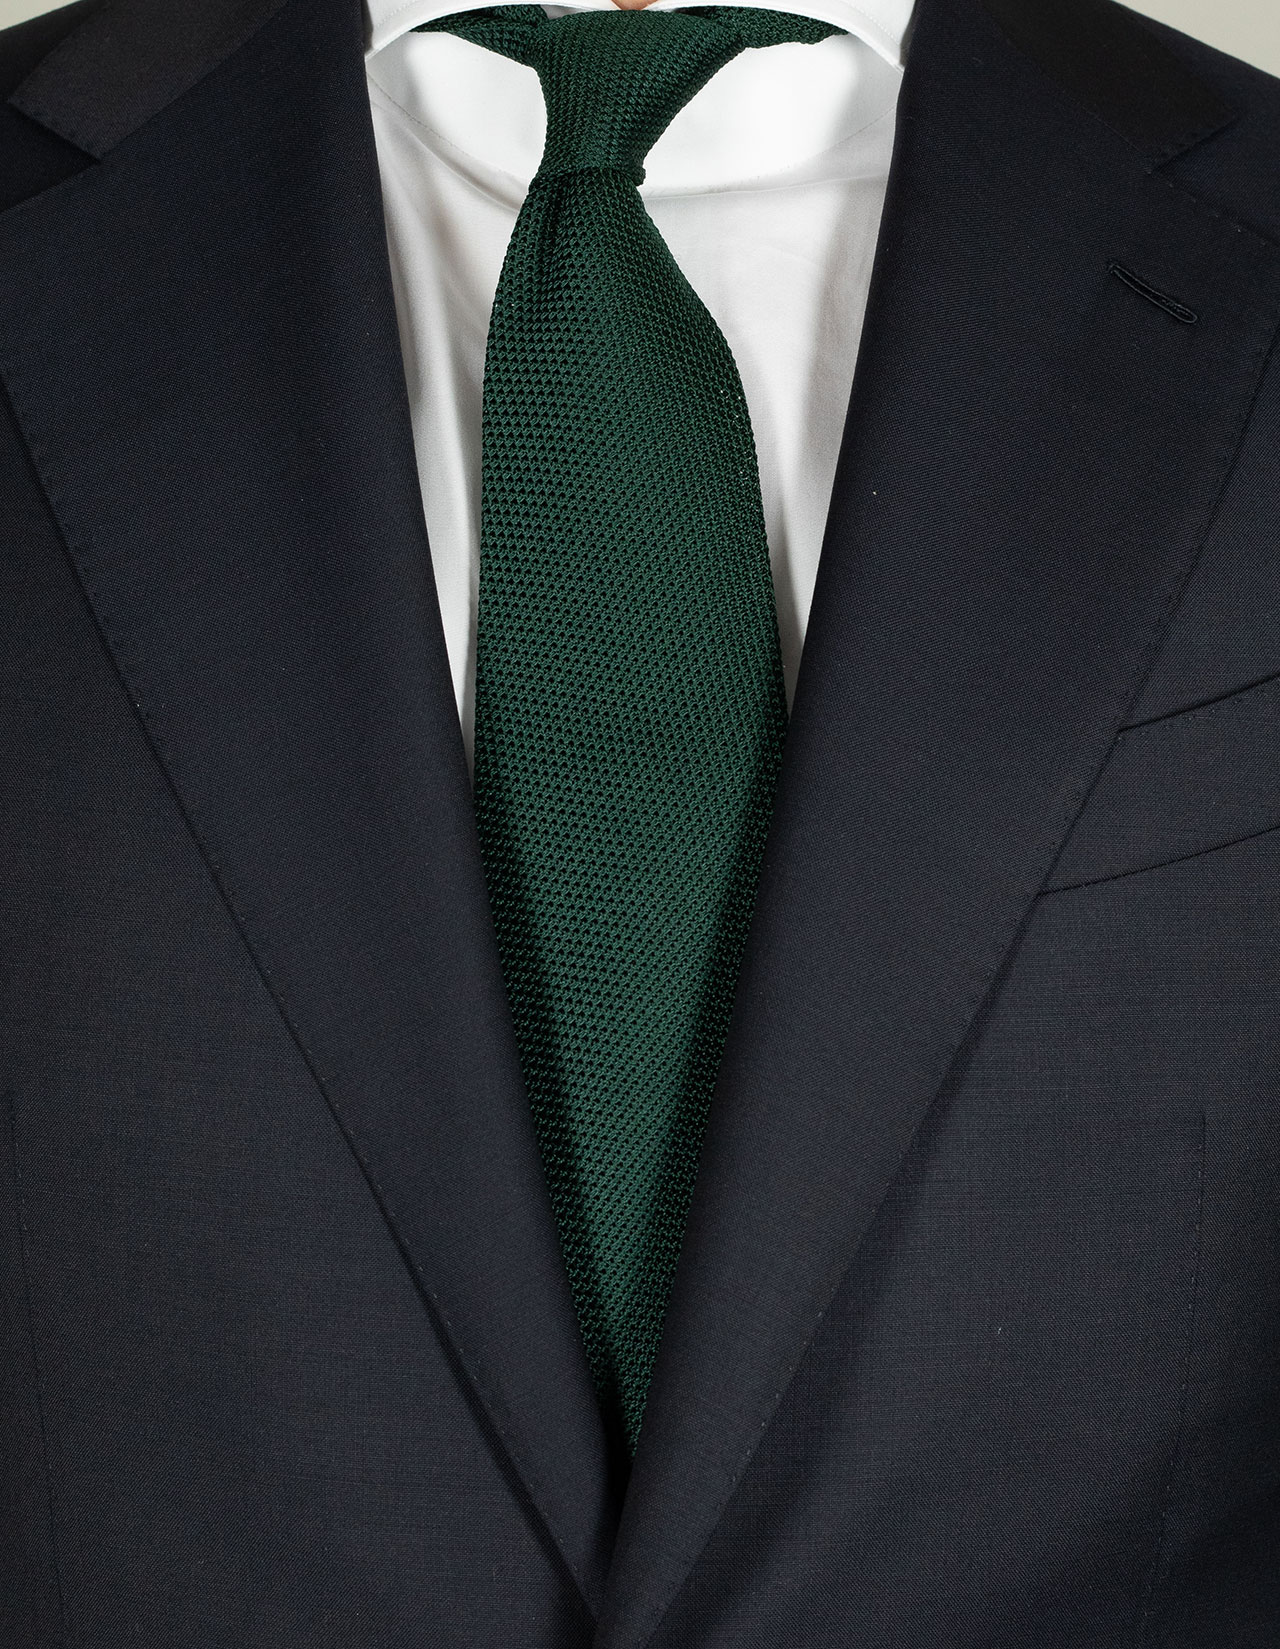 Cesare Attolini Krawatte in dunkelgrün aus Seidenstrick ungefüttert